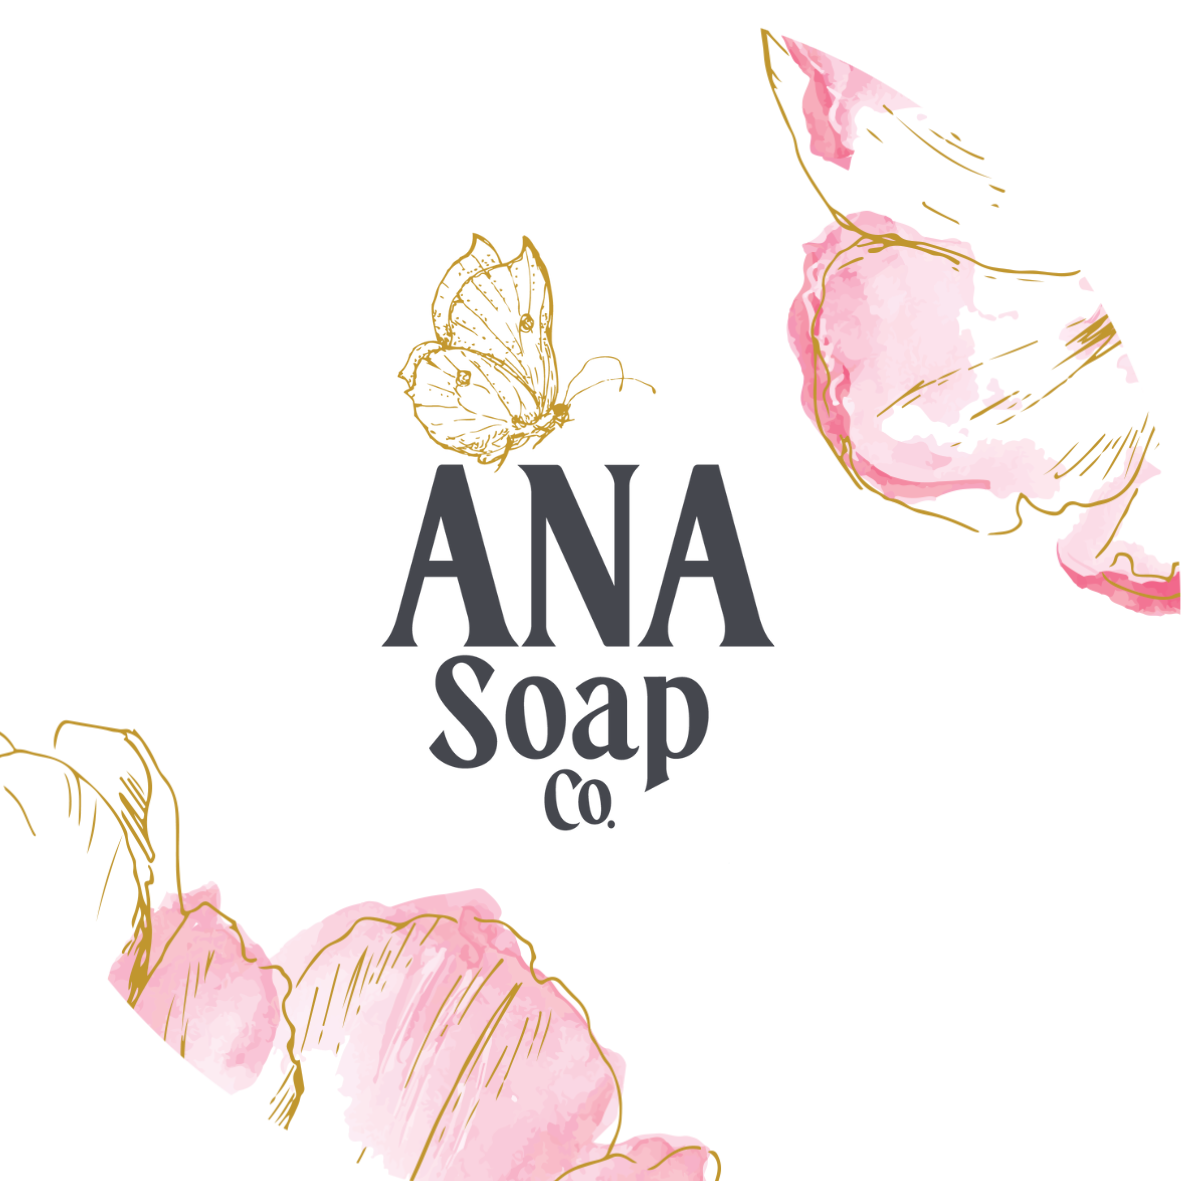 ANA Soap Co.